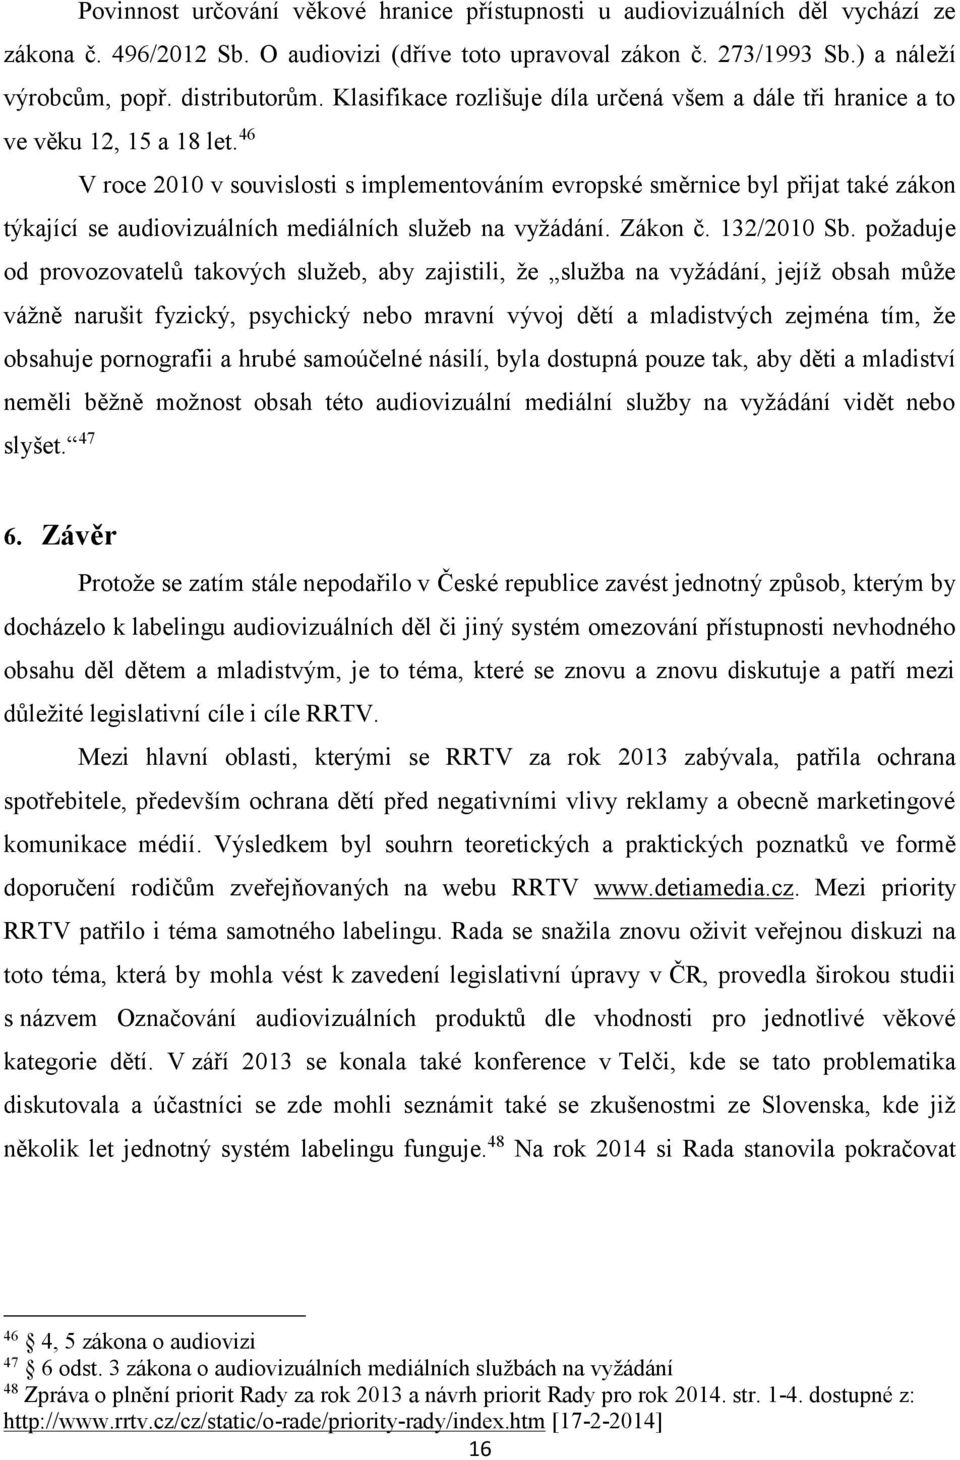 46 V roce 2010 v souvislosti s implementováním evropské směrnice byl přijat také zákon týkající se audiovizuálních mediálních služeb na vyžádání. Zákon č. 132/2010 Sb.